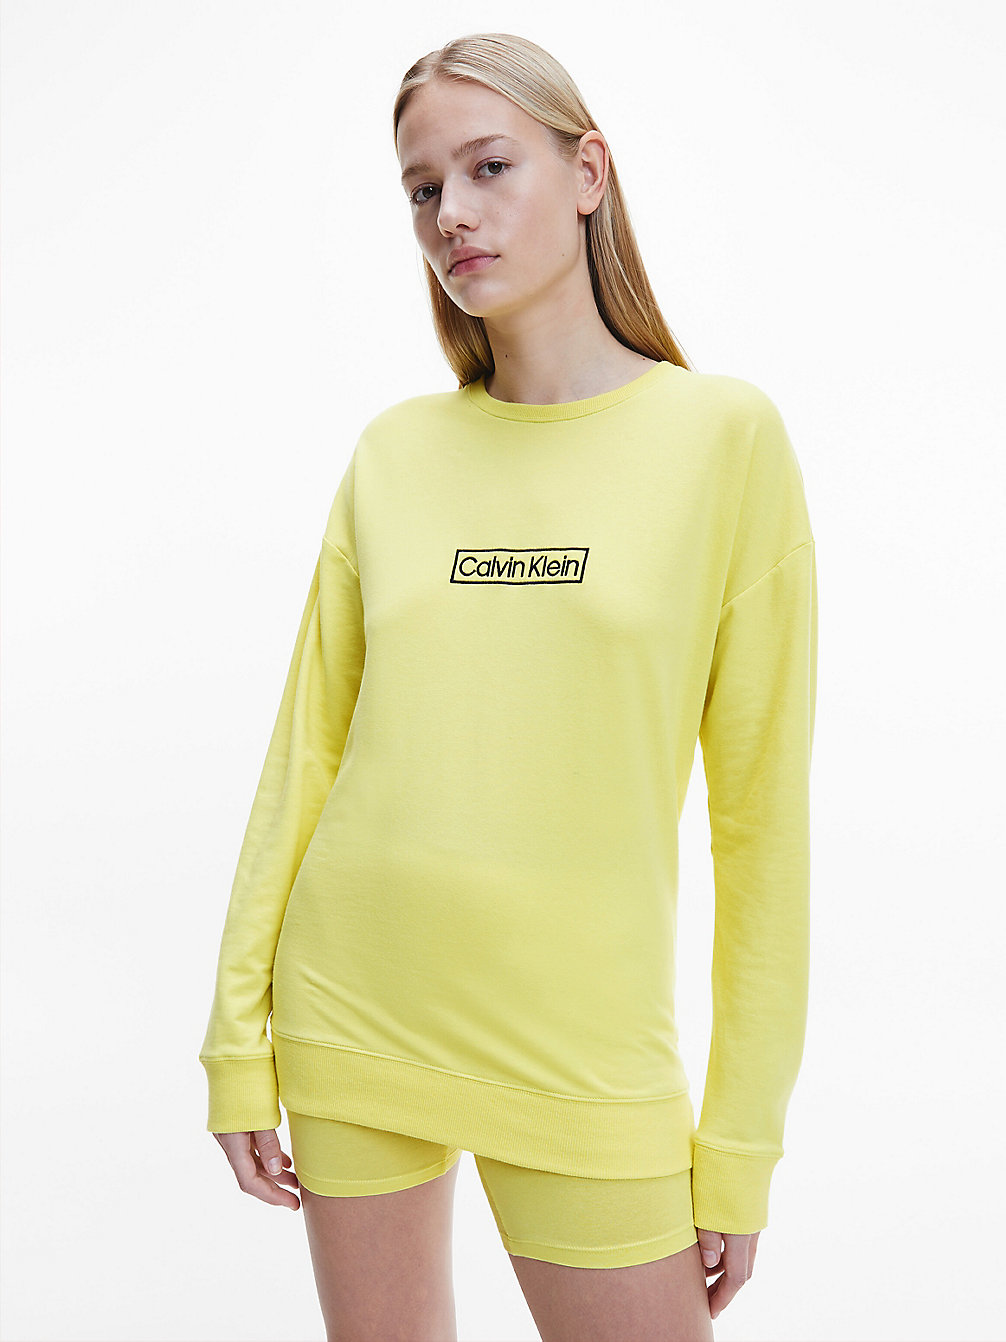 Loungesweatshirt - Reimagined Heritage > CYBER GREEN > undefined donna > Calvin Klein